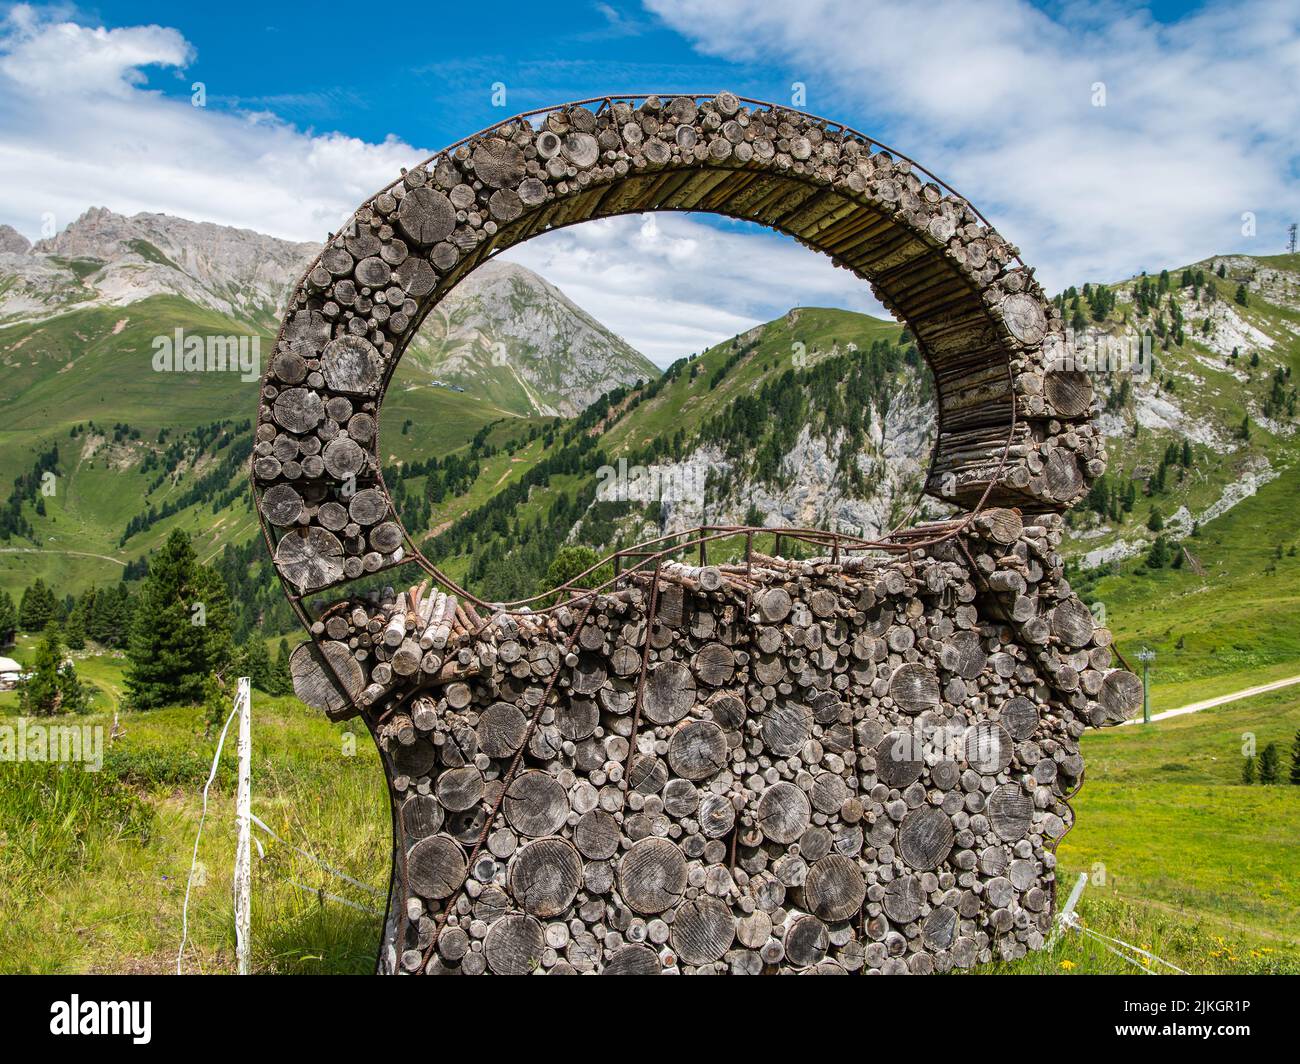 Les installations artistiques interagissent avec la nature des Dolomites, site classé au patrimoine mondial naturel par l'UNESCO - Pampeago-Dolomite Trentin, Italie Banque D'Images